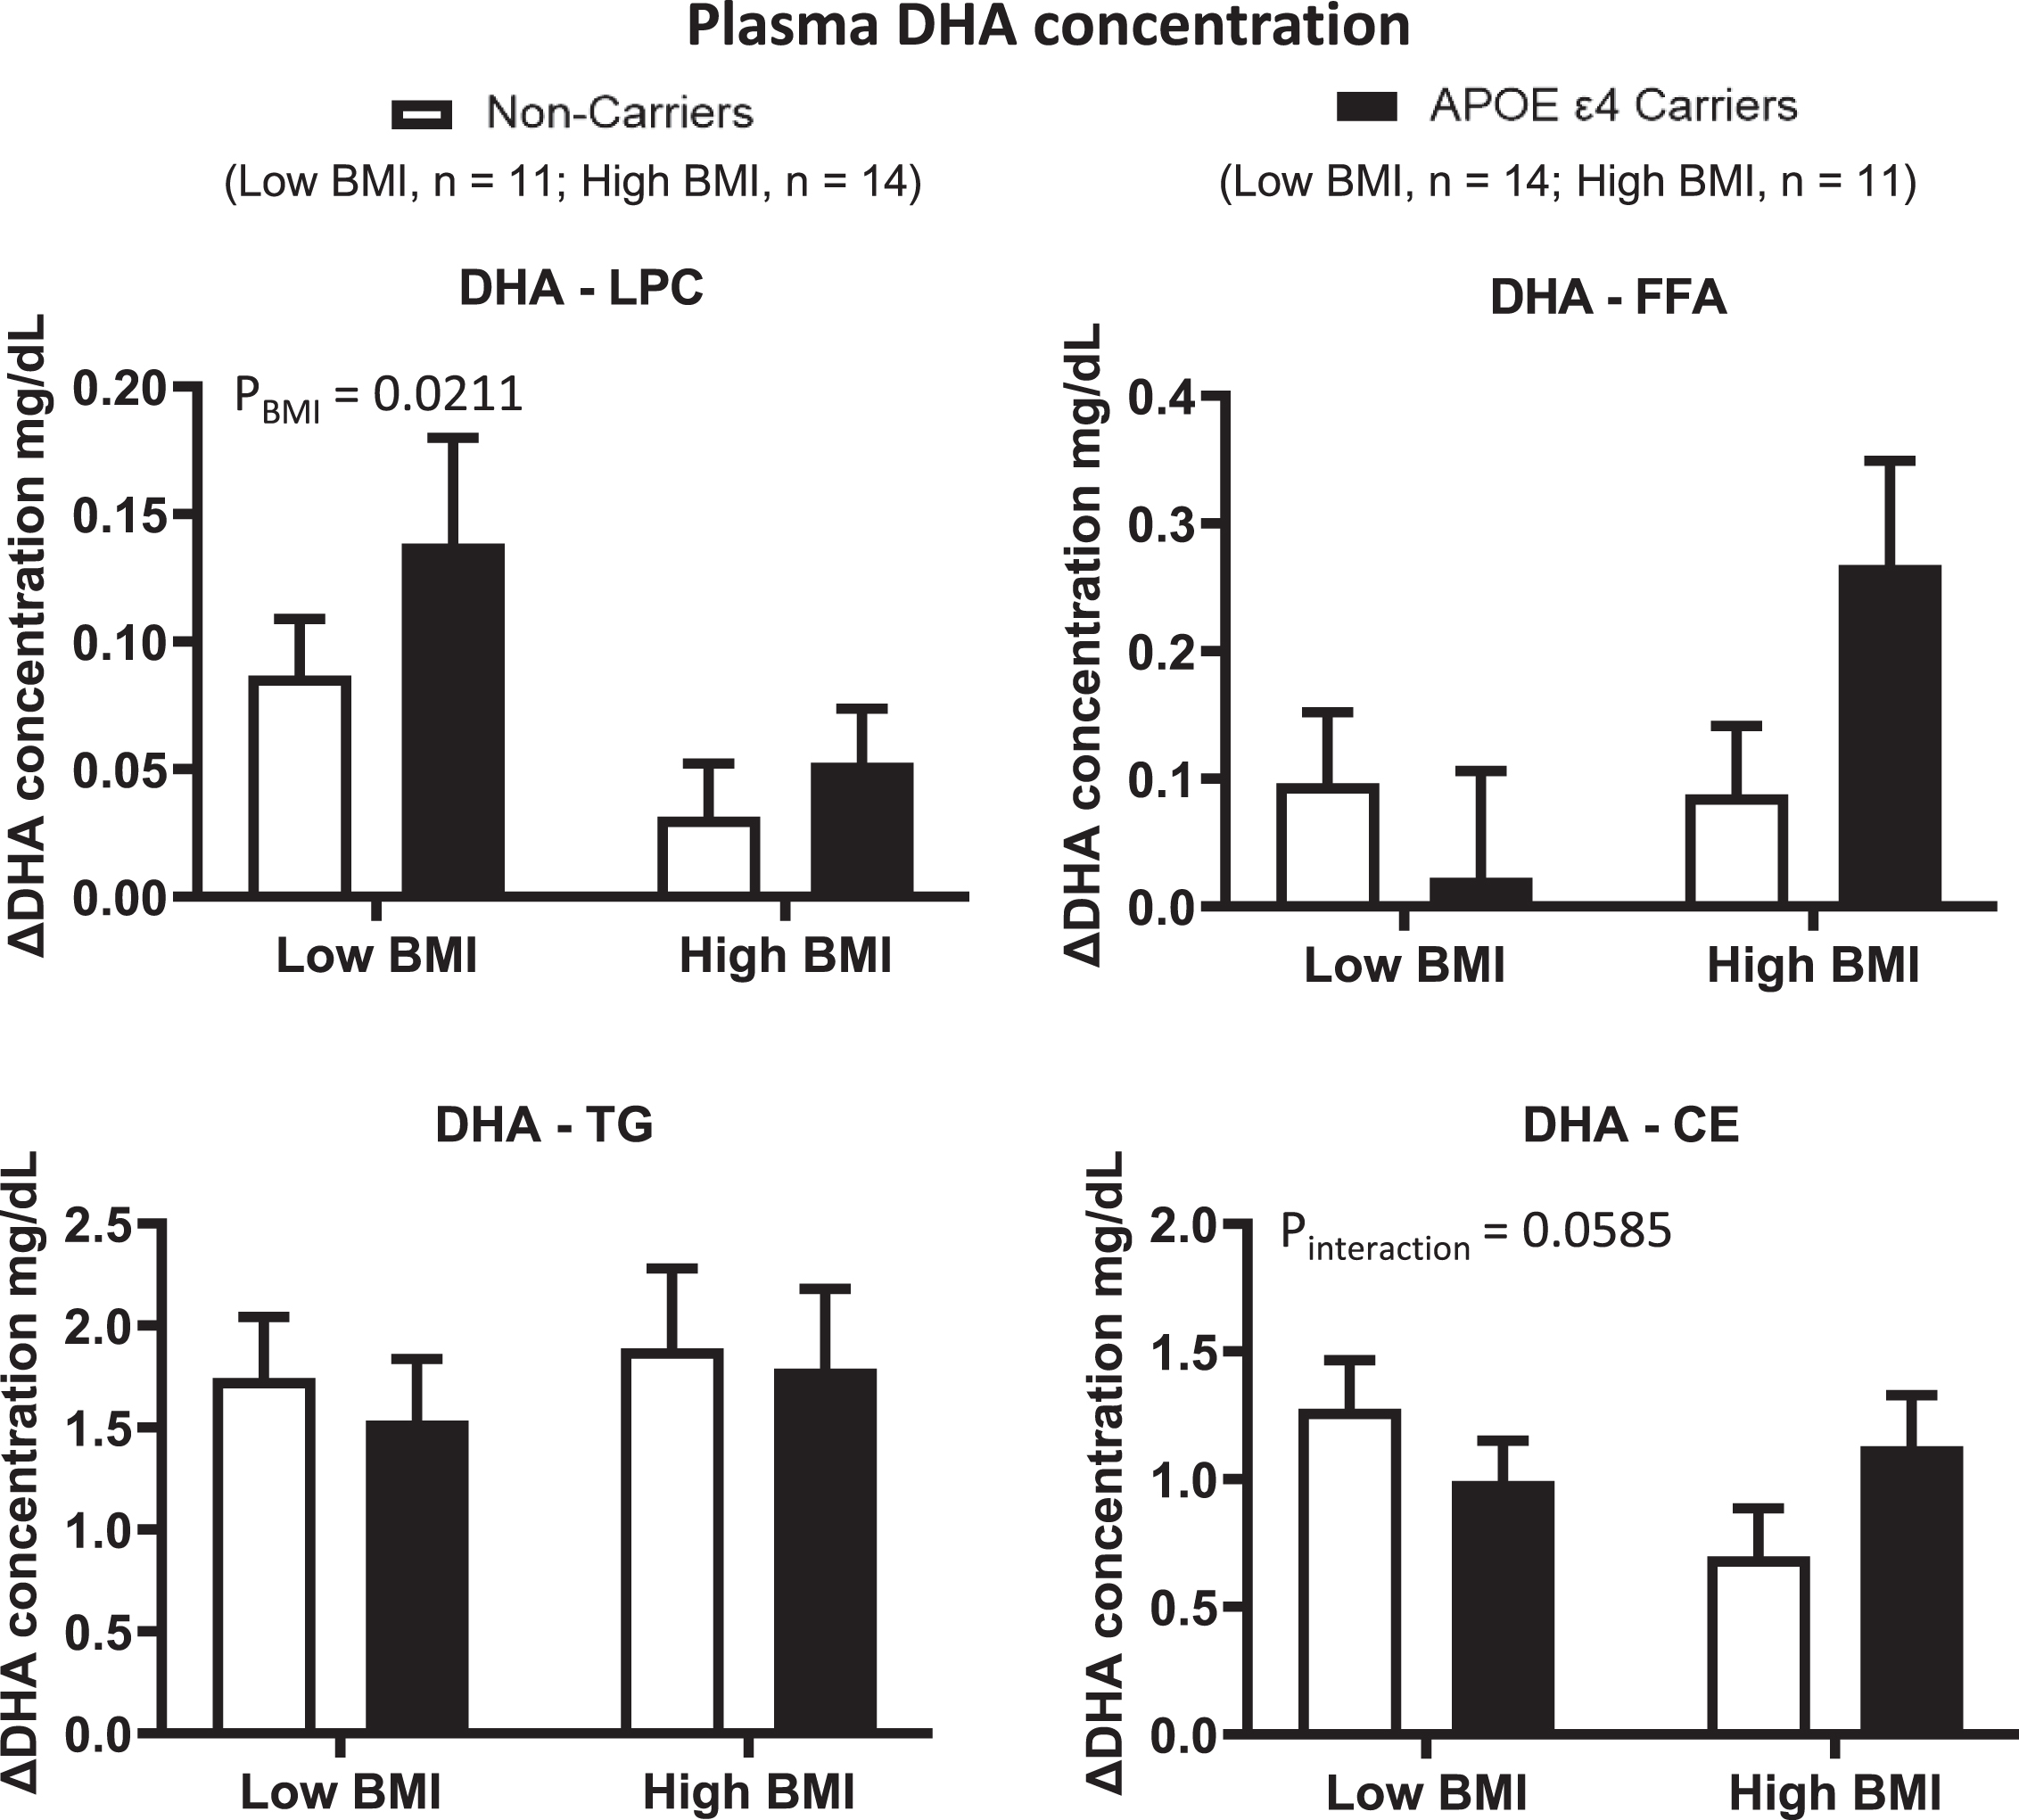 ΔDHA concentrations were compared in different plasma lipid compartments based on APOE4 genotype and BMI. Low BMI: n = 11 non-carriers; n = 14 APOE4 carriers. High BMI: n = 14 non-carriers; n = 11 APOE4 carriers. LPC: There was a BMI effect where ΔDHA was lower in the high BMI group than in the low BMI group. FFA: There is no BMI nor genotype effect for ΔDHA. TG: There is no BMI nor genotype effect for ΔDHA. CE: There is no BMI or genotype effect; however, there is a trend for BMI by genotype interaction. Data are presented as the mean±SEM. The Mann–Whitney test was used to compare the ΔDHA medians between genotypes and BMI groups. APOE4 –Epsilon 4 allele of the apolipoprotein E gene; BMI –Body mass index; CE –Cholesteryl ester; DHA –Docosahexaenoic acid; FFA –Free fatty acid; LPC –Lysophosphatidylcholine; TG –Triglyceride.